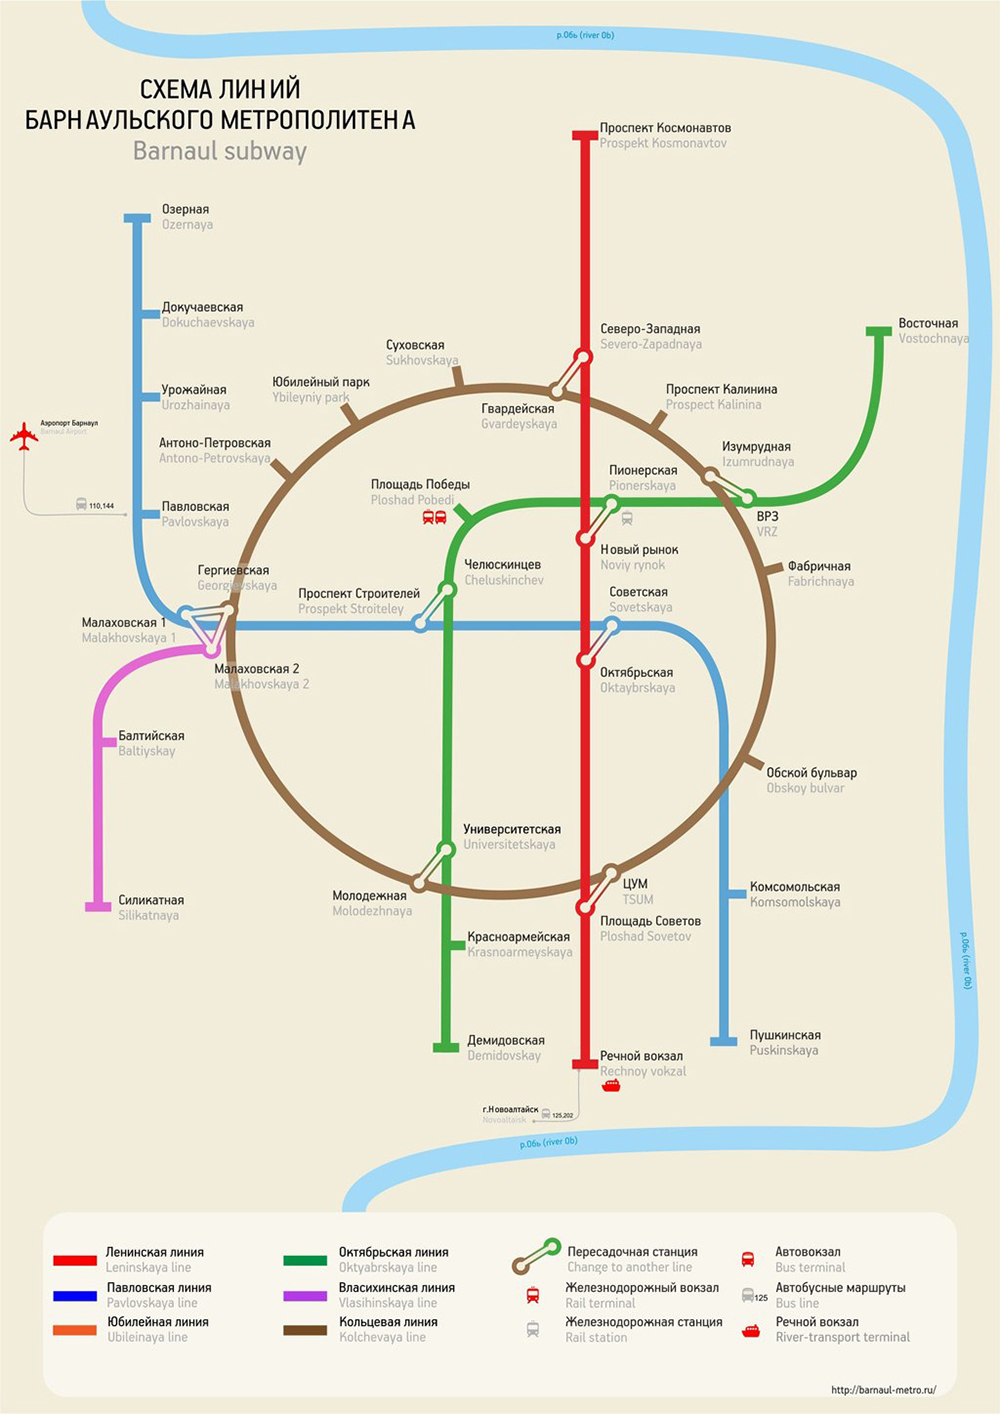 Схема несуществующего барнаульского метро. Источник: сообщество «Барнаульский метрополитен» во «Вконтакте»